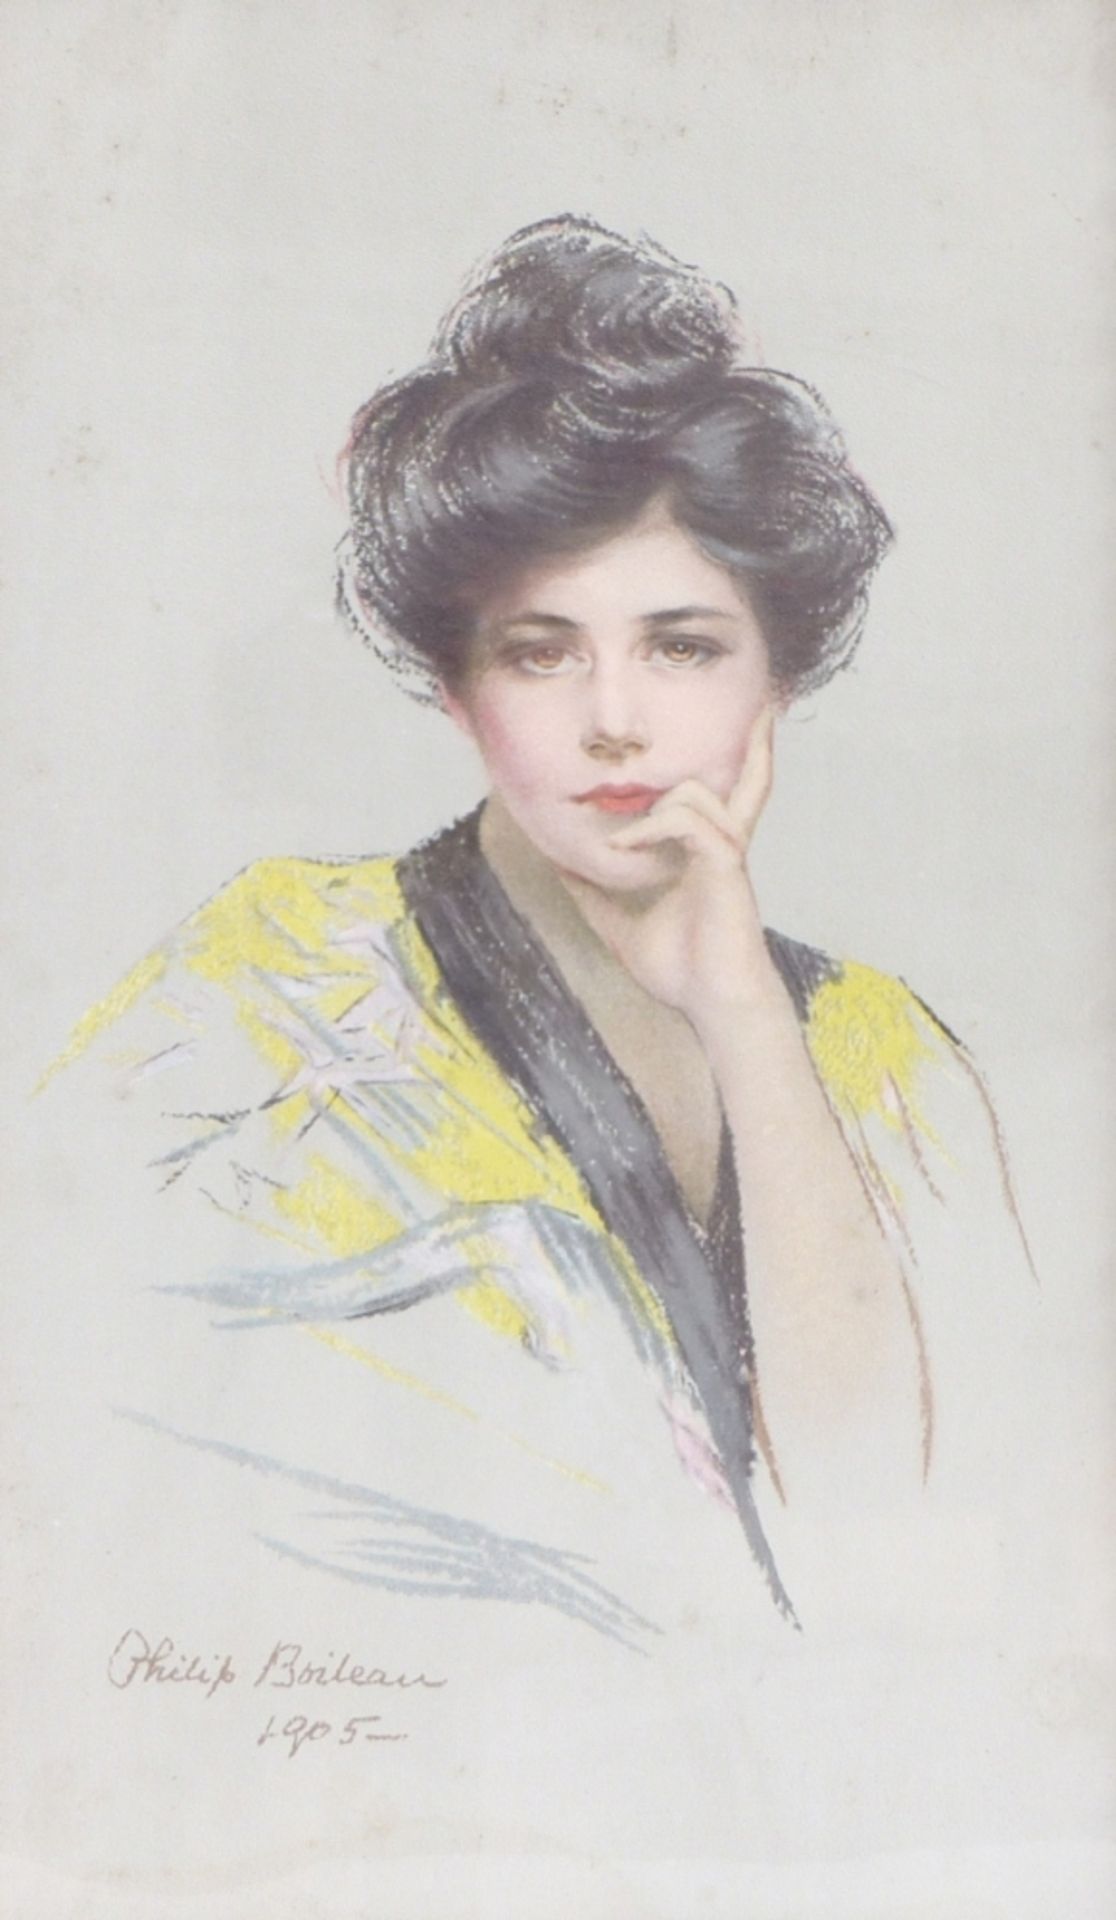 Boileau, PhilipBildnis einer jungen Dame(Québéc 1863-1917 New York City) Farblithographie (?). Links